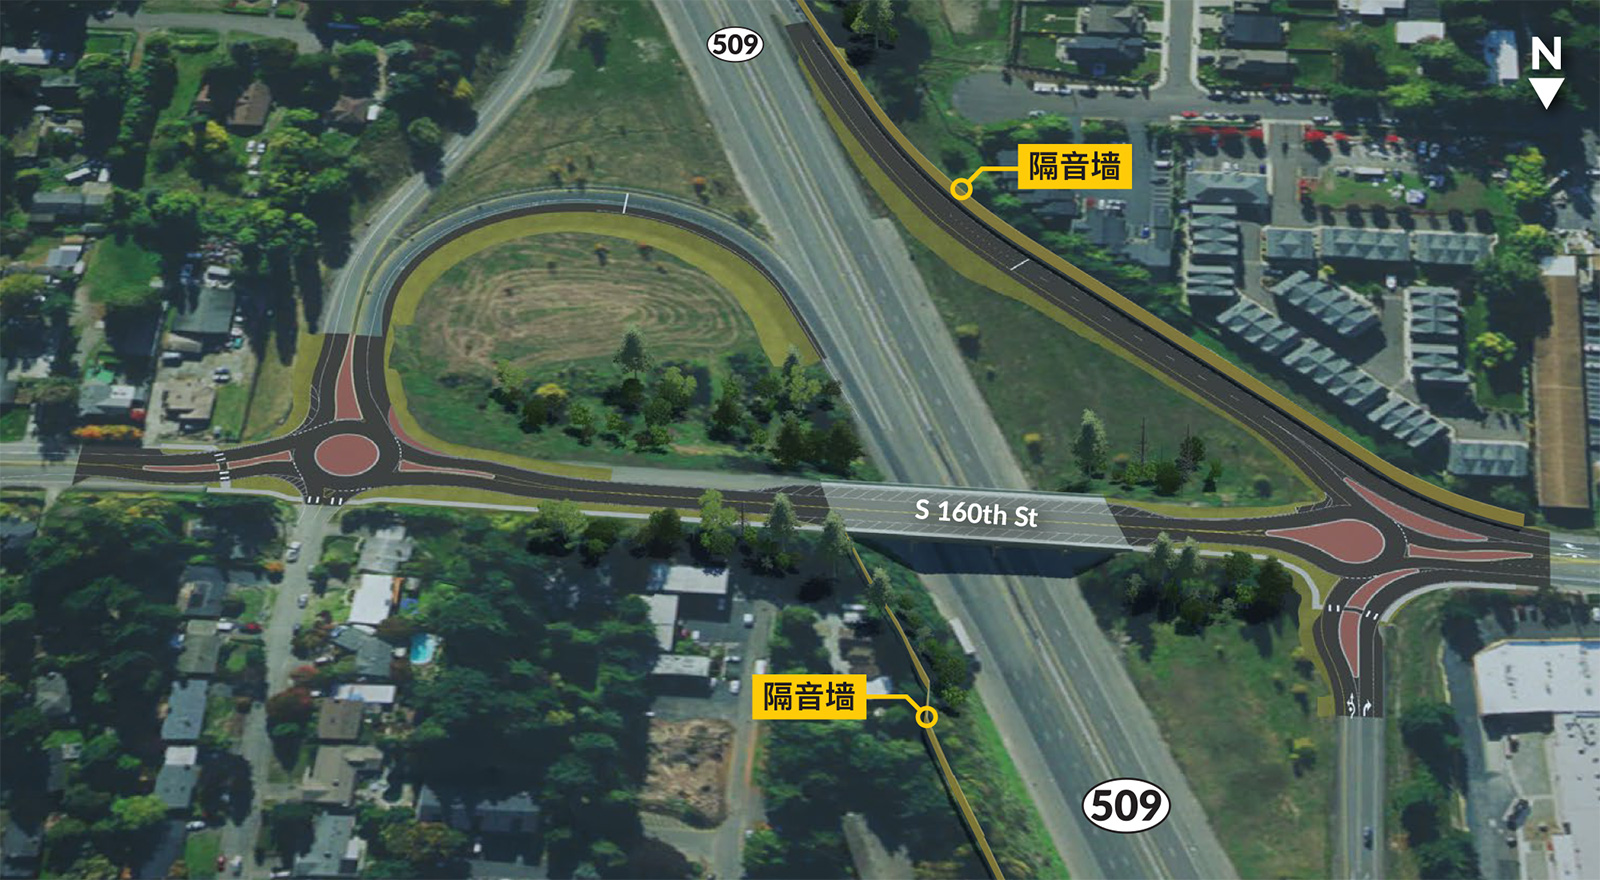  在南160街（South 160th Street），环形交叉路口将会消除 SR 509 北行出口匝道上无保护的左转。